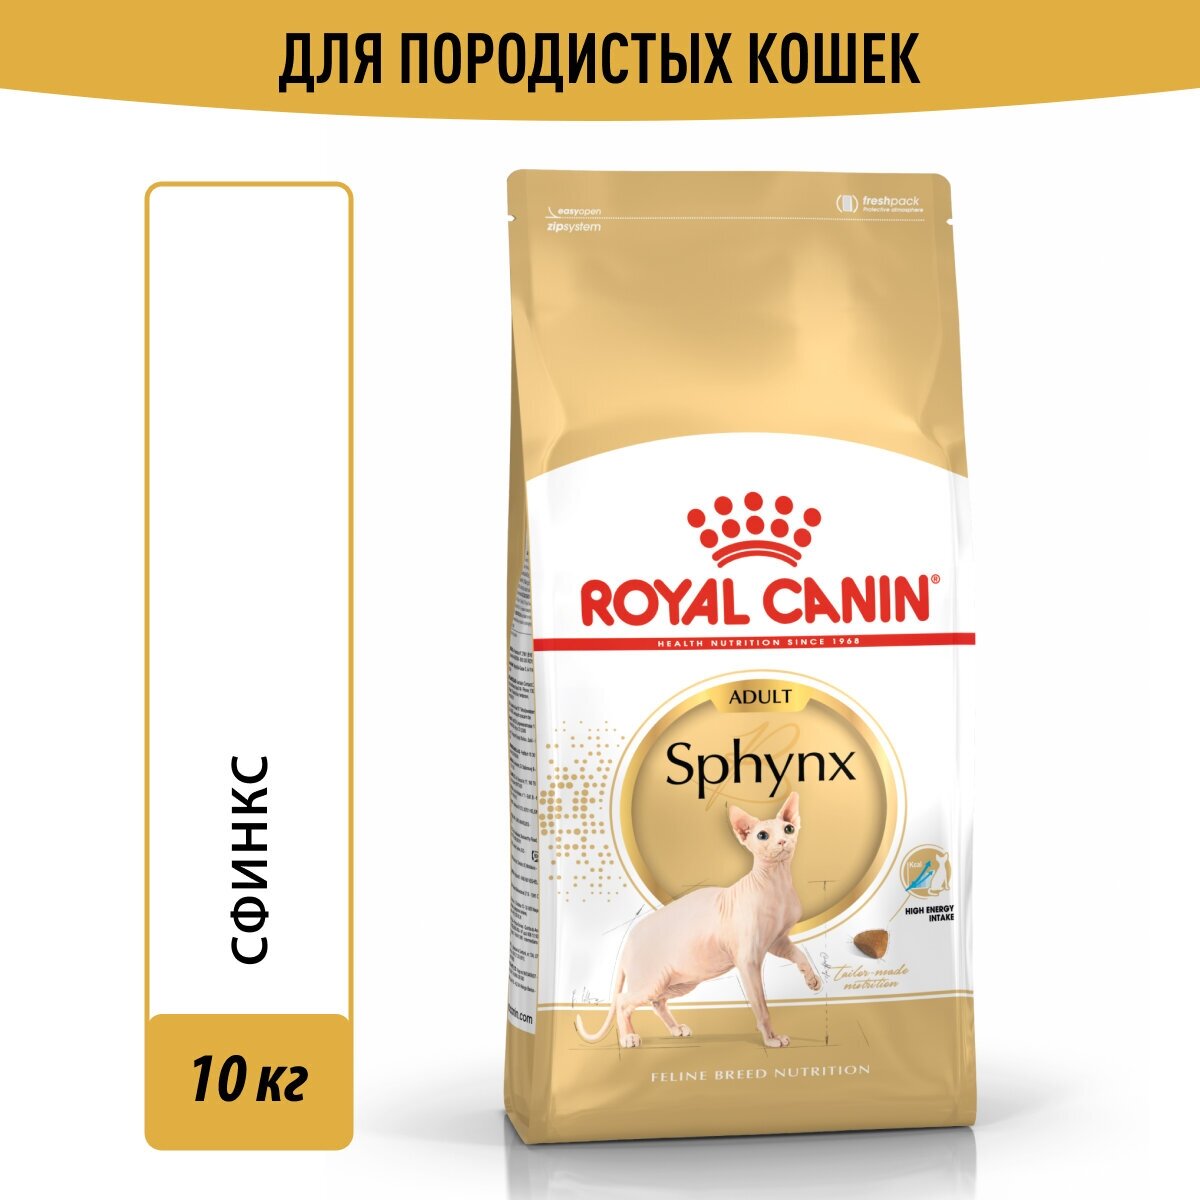 ROYAL CANIN SPHYNX ADULT для взрослых сфинксов (10 кг)